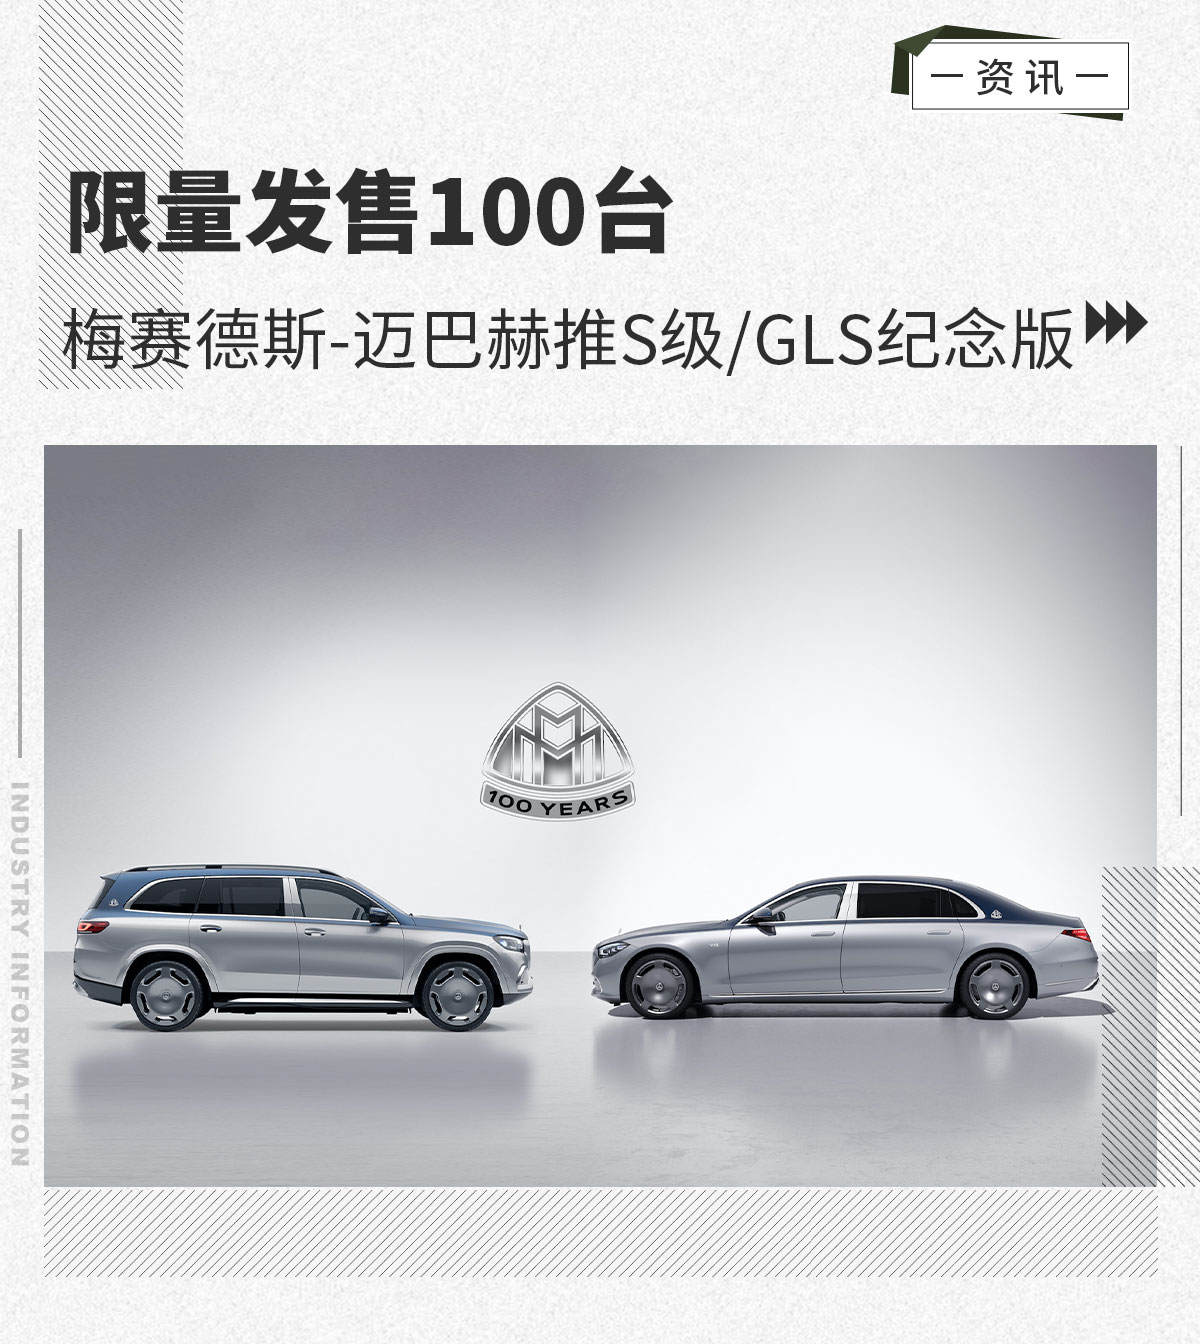 限量发售100台 梅赛德斯-迈巴赫推S级/GLS纪念版